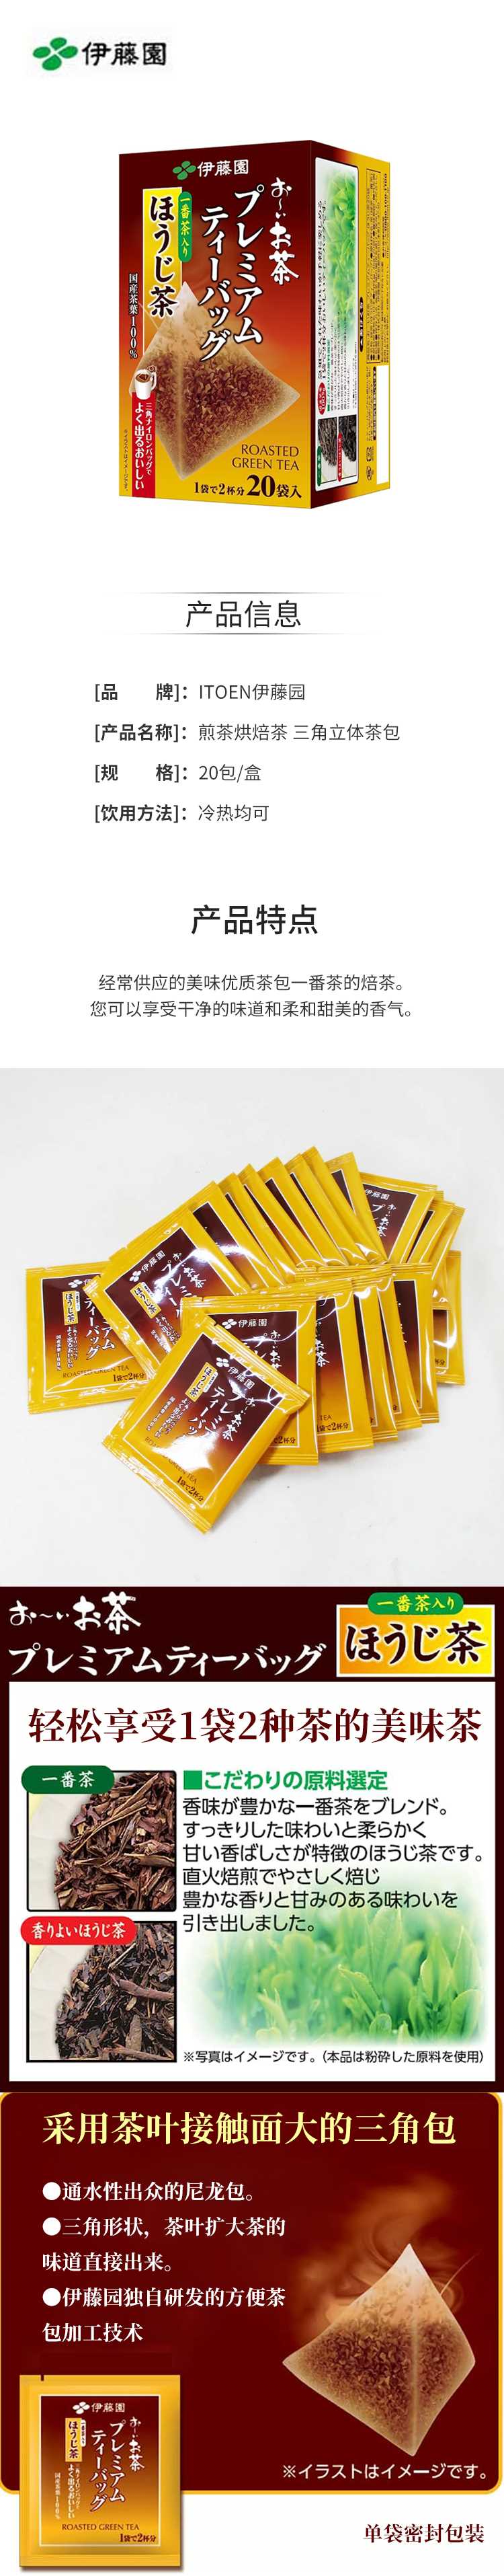 【日版】ITOEN伊藤园-煎茶烘焙茶20包盒-三角立体茶包.jpg